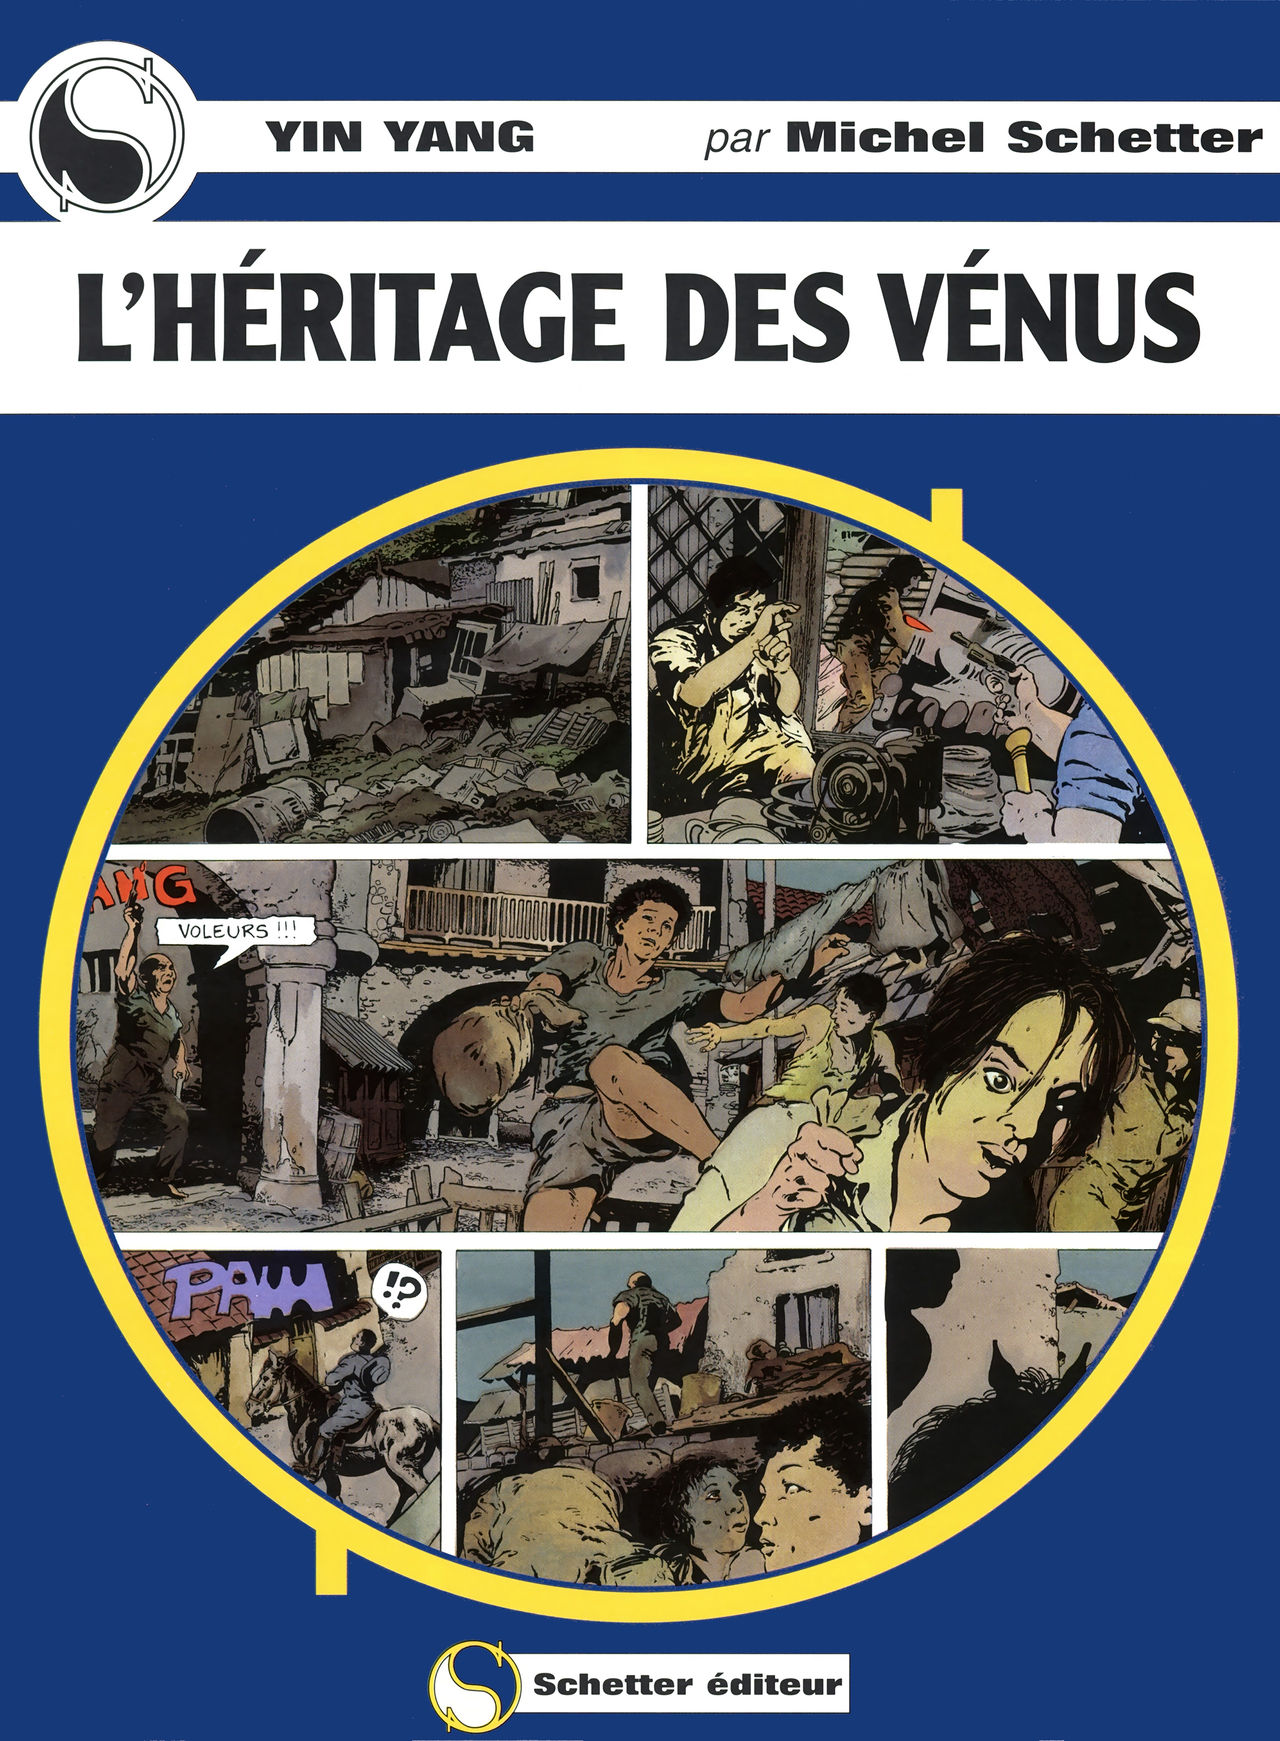 Michel Schetter - Yin Yang 7 - LHéritage des Vénus numero d'image 2